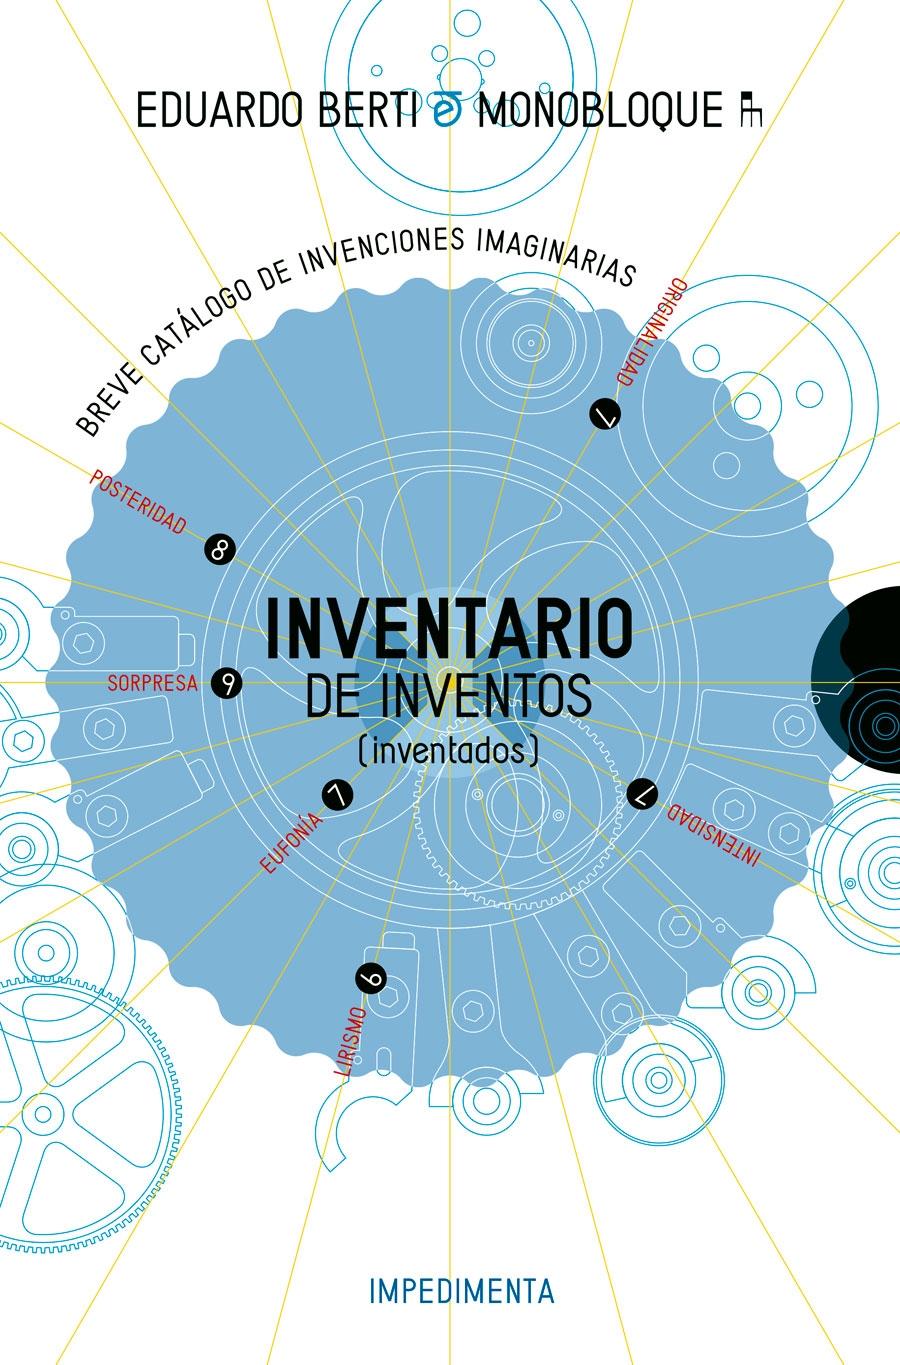 INVENTARIO DE INVENTOS "INVENTADOS"